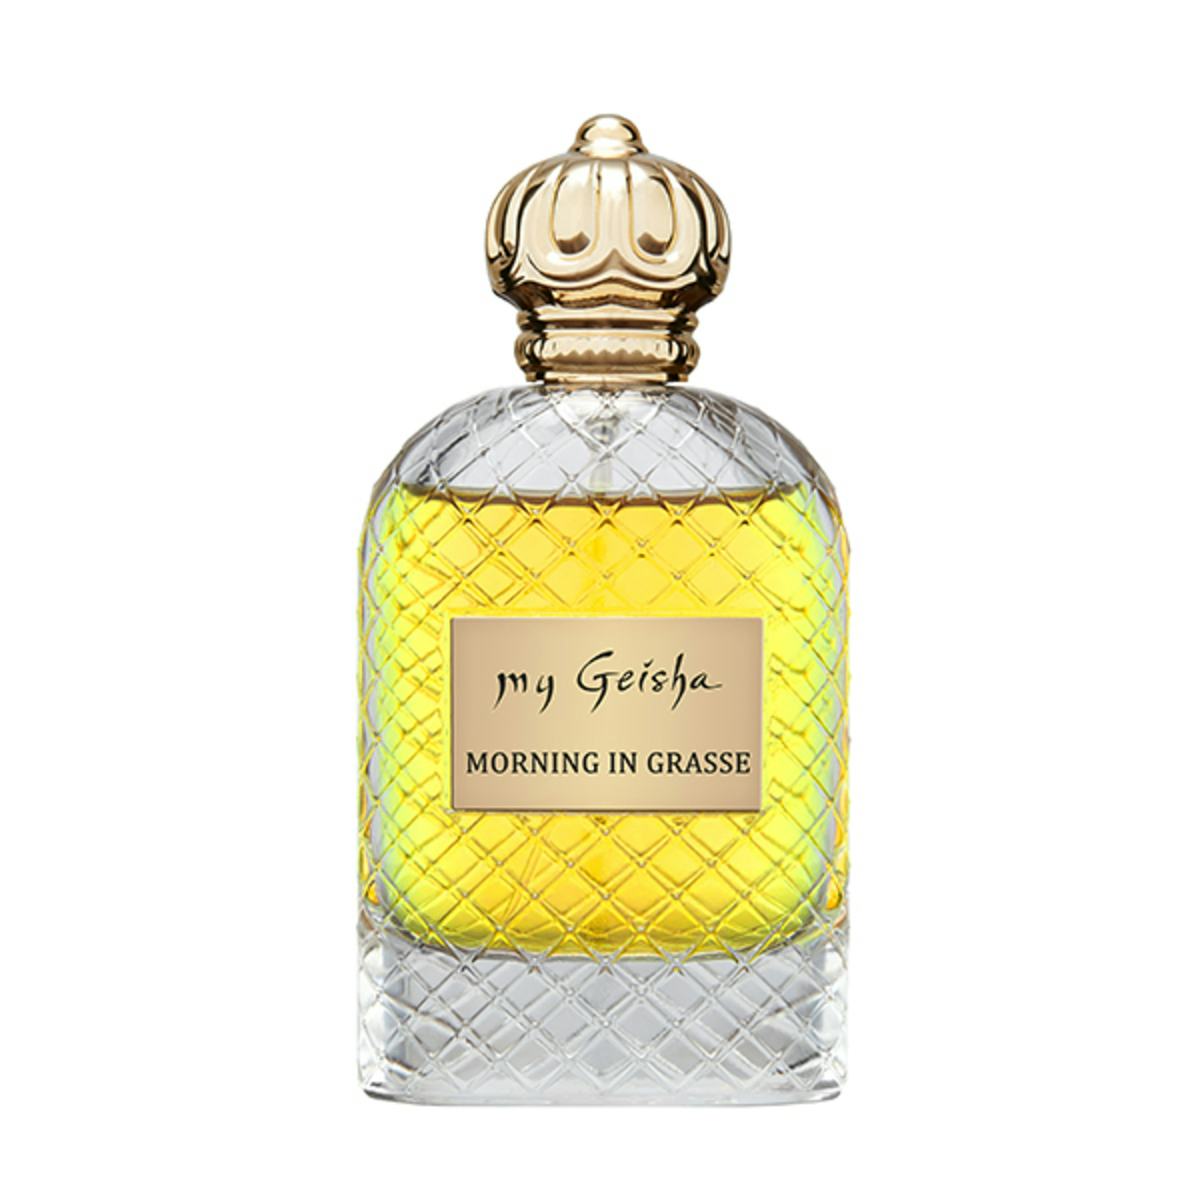 Extrait de parfum "Morning in Grasse" 100 ml, prodotto artigianale per la vendita diretta in Svizzera